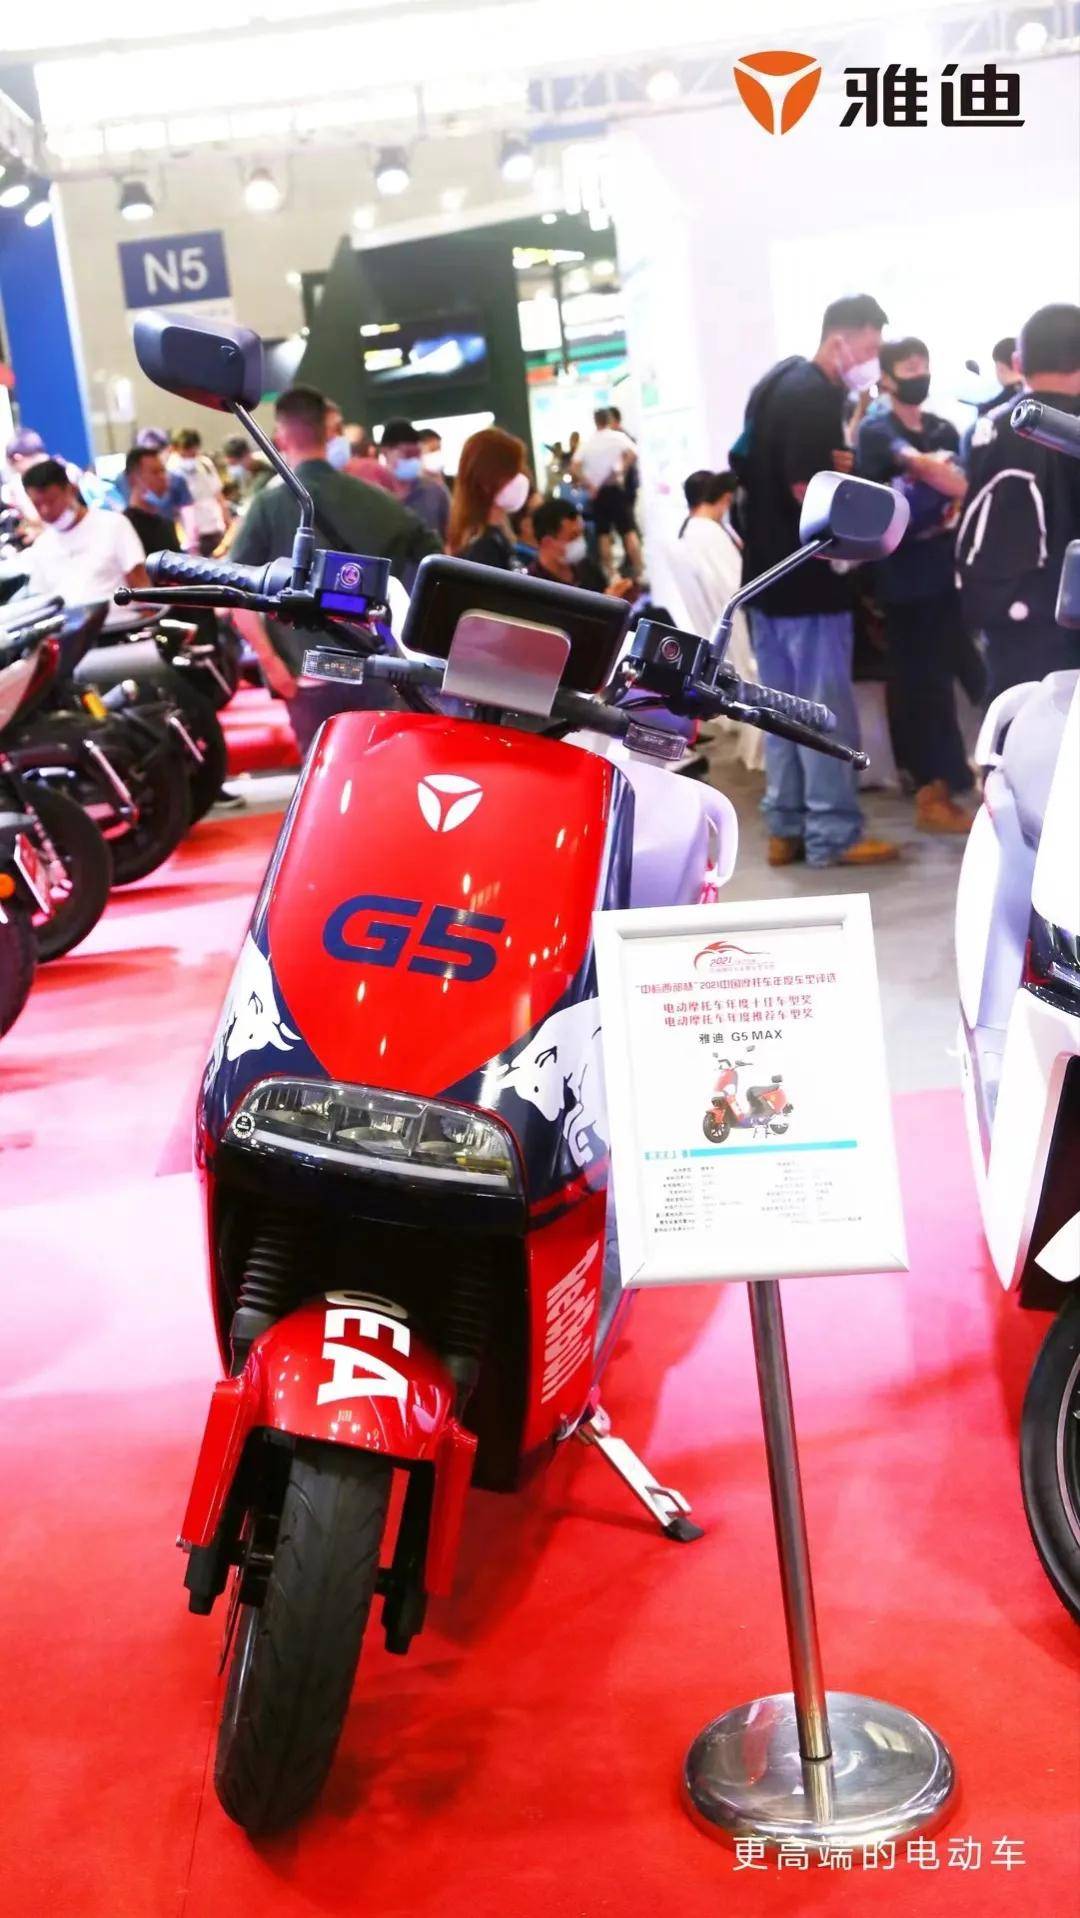 *雅迪g5 max电动车在第19届重庆中国国际摩托车博览会现场展出无论是